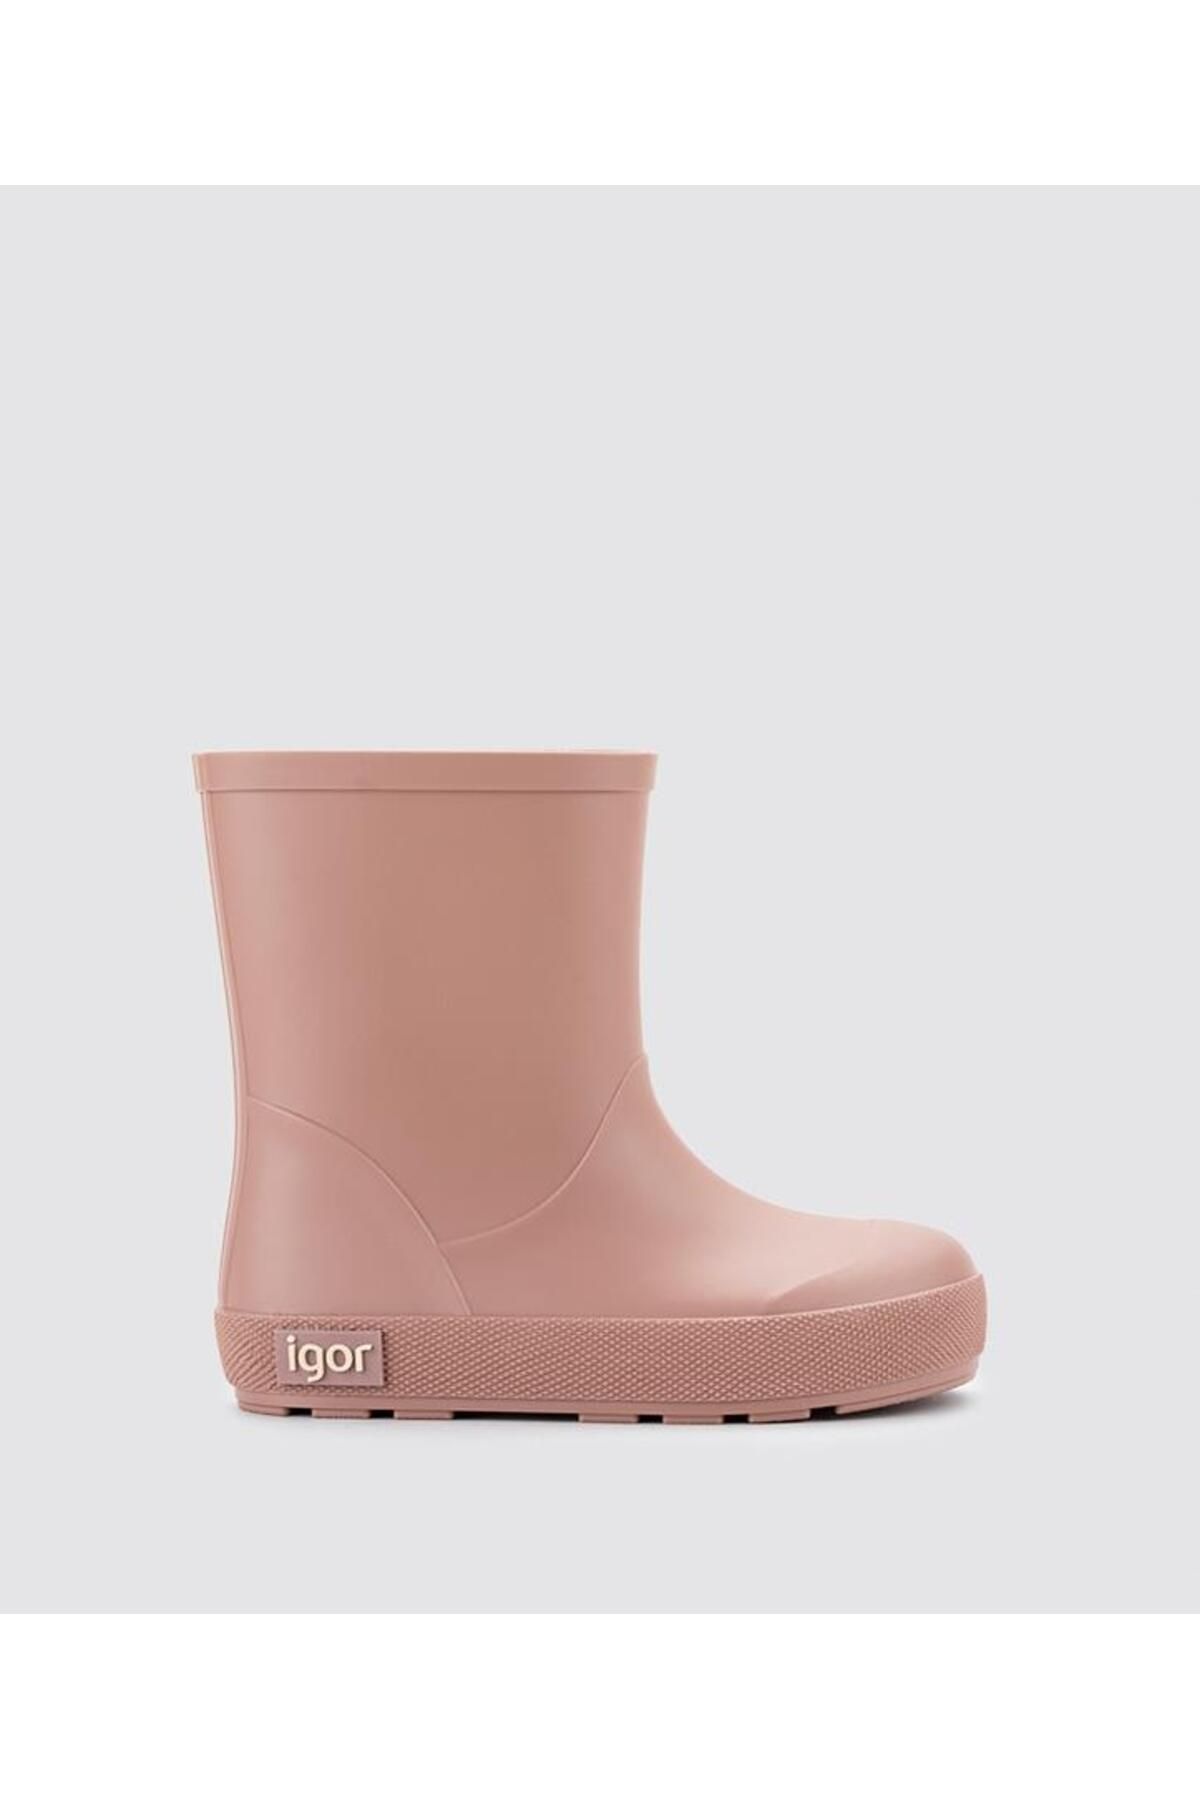 IGOR Yogi Yağmur Çizmesi - Rosa/dusty Pink